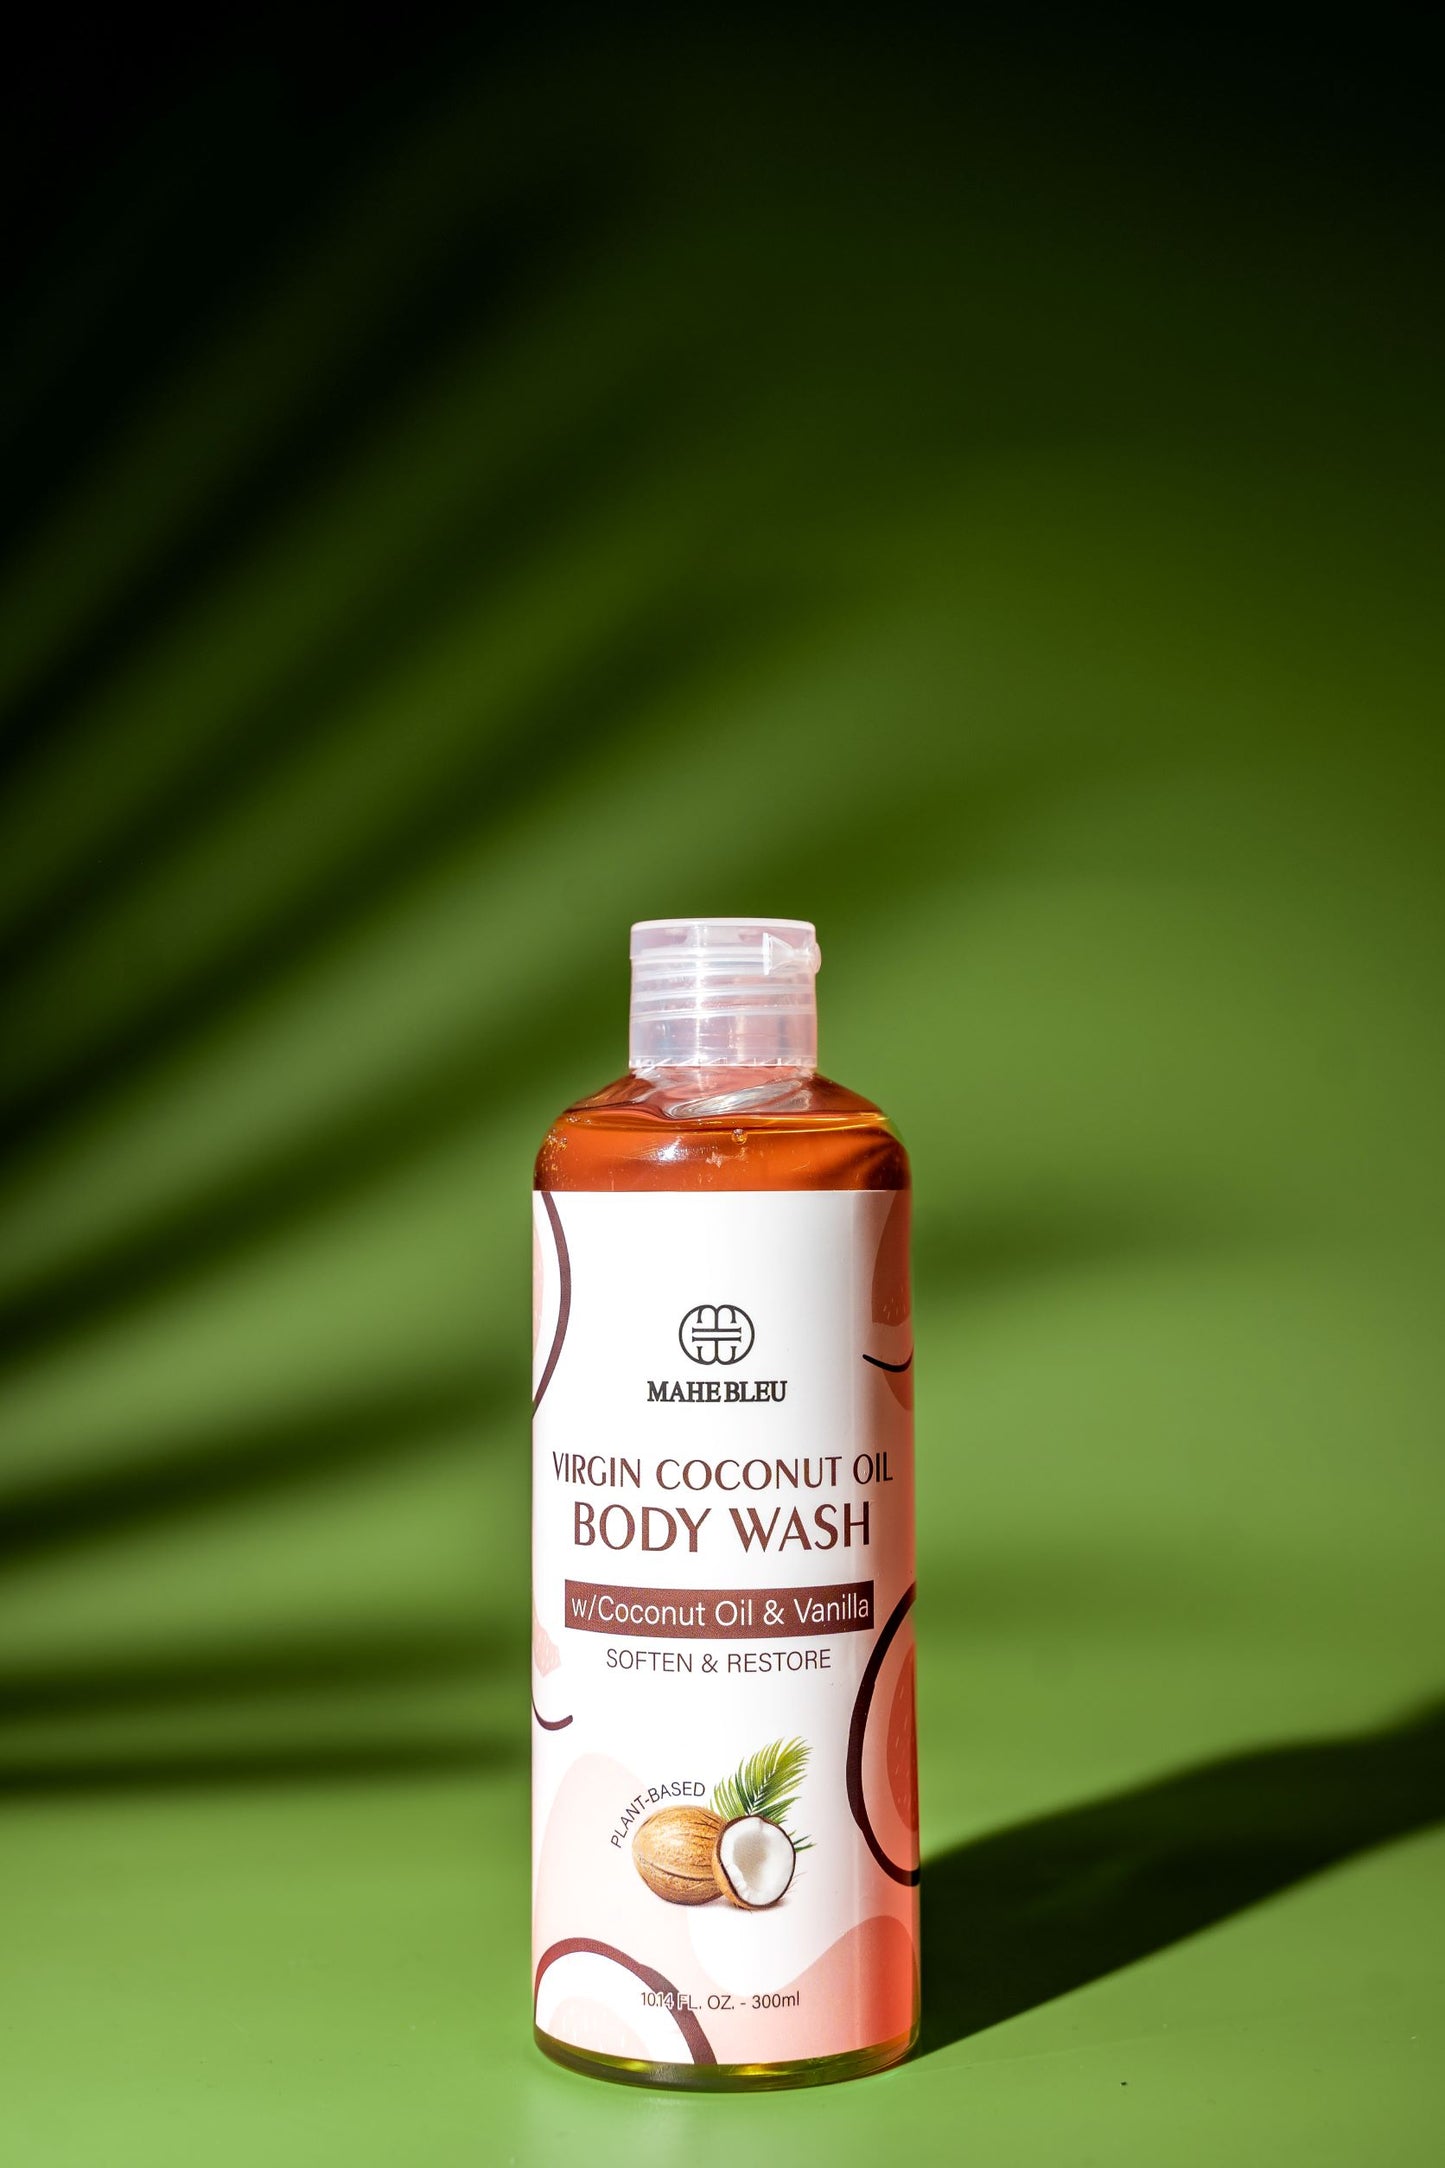 Virgin Coconut Oil Body Wash w/ Coconut Oil & Vanilla